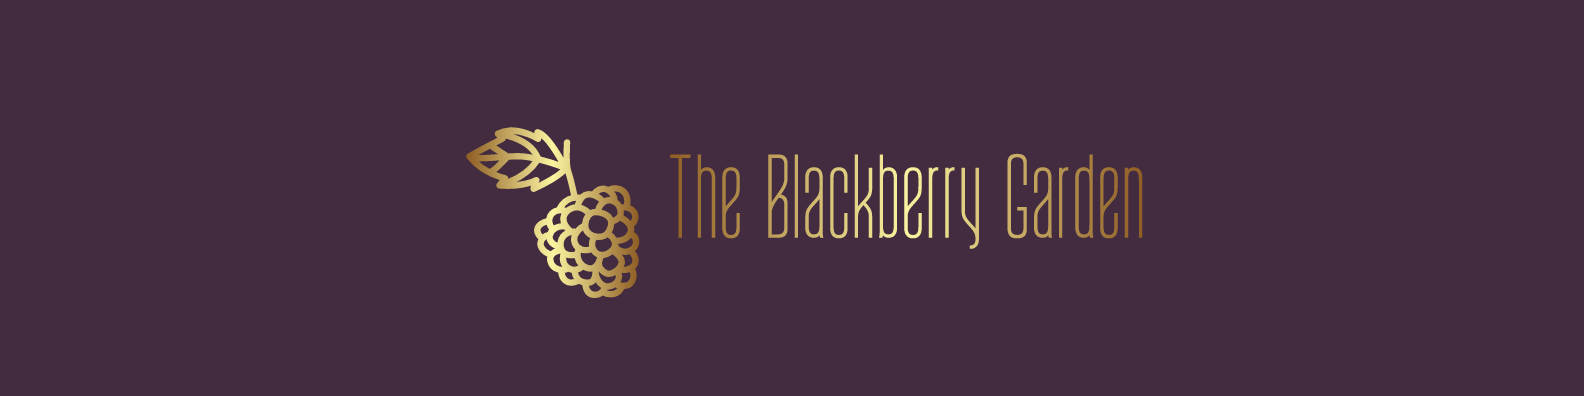 the blackberry garden